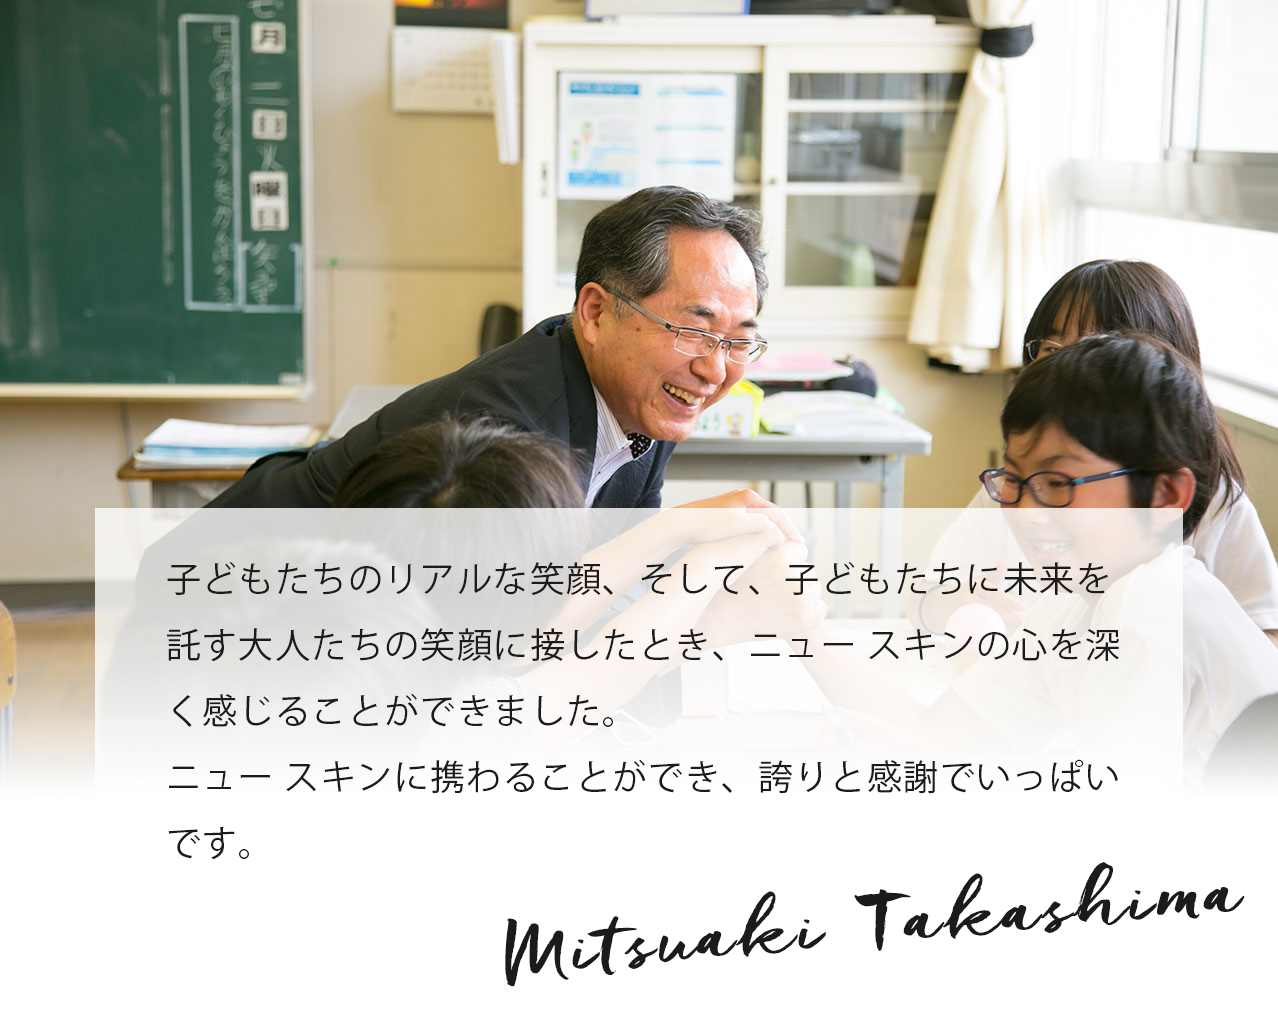 「行ってみないと分からない、被災地の現状。行ってみないと分からない、生かされている僕ら。行ってみないと分からない、ニュースキンの凄さ」。連れて行っていただいて、感謝です。 Mitsuaki Takashima